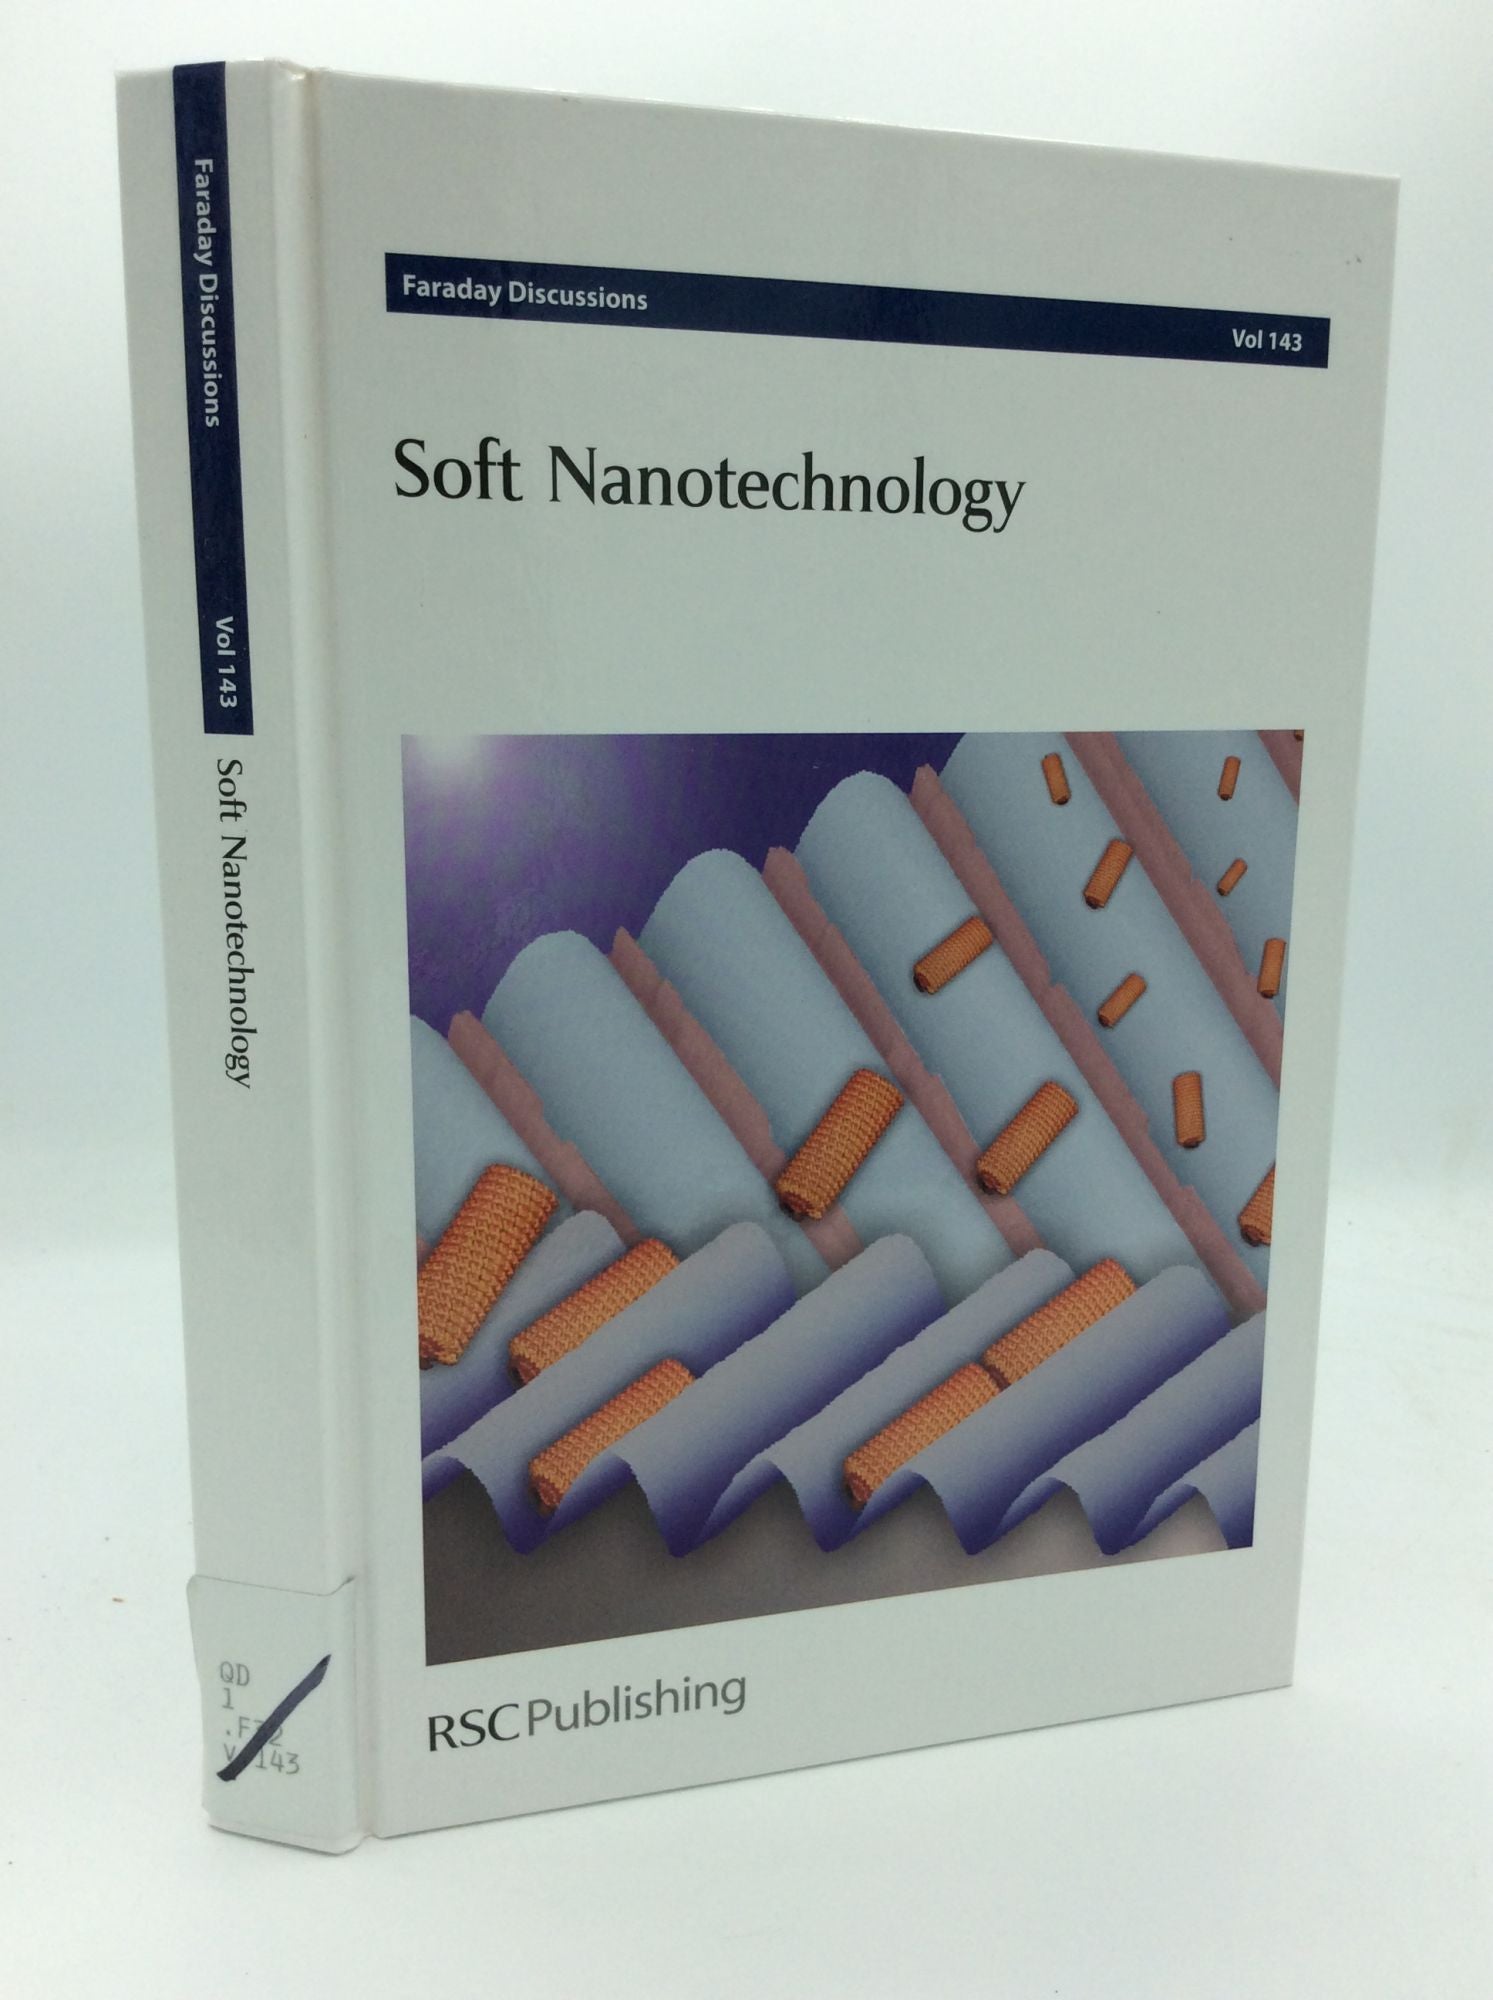 The Royal Society of Chemistry - Soft Nanotechnology